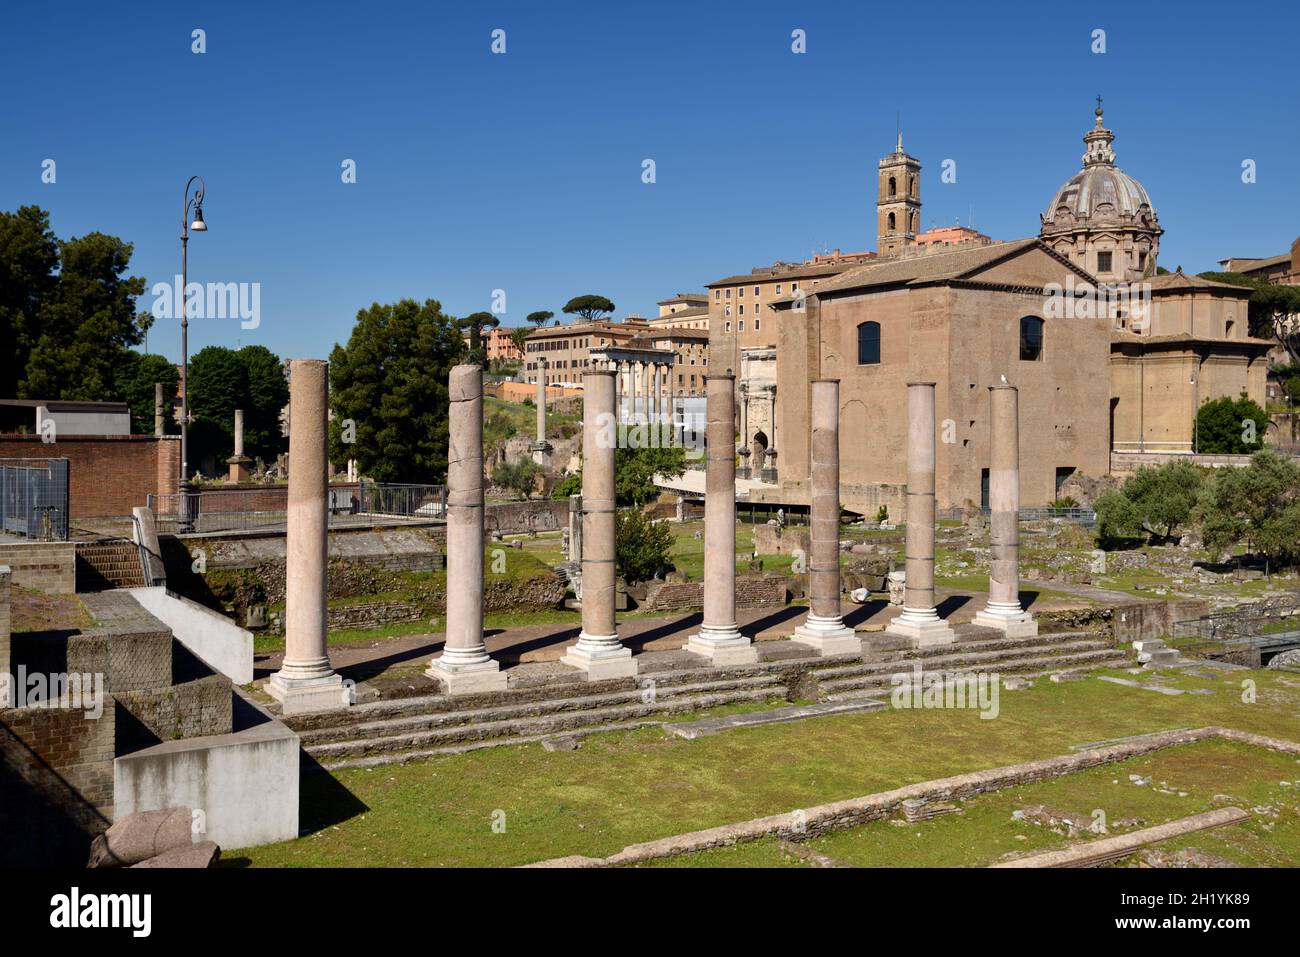 Italie, Rome, Forum romain, Foro della Pace (Forum de la paix), colonnes du Temple de la paix Banque D'Images